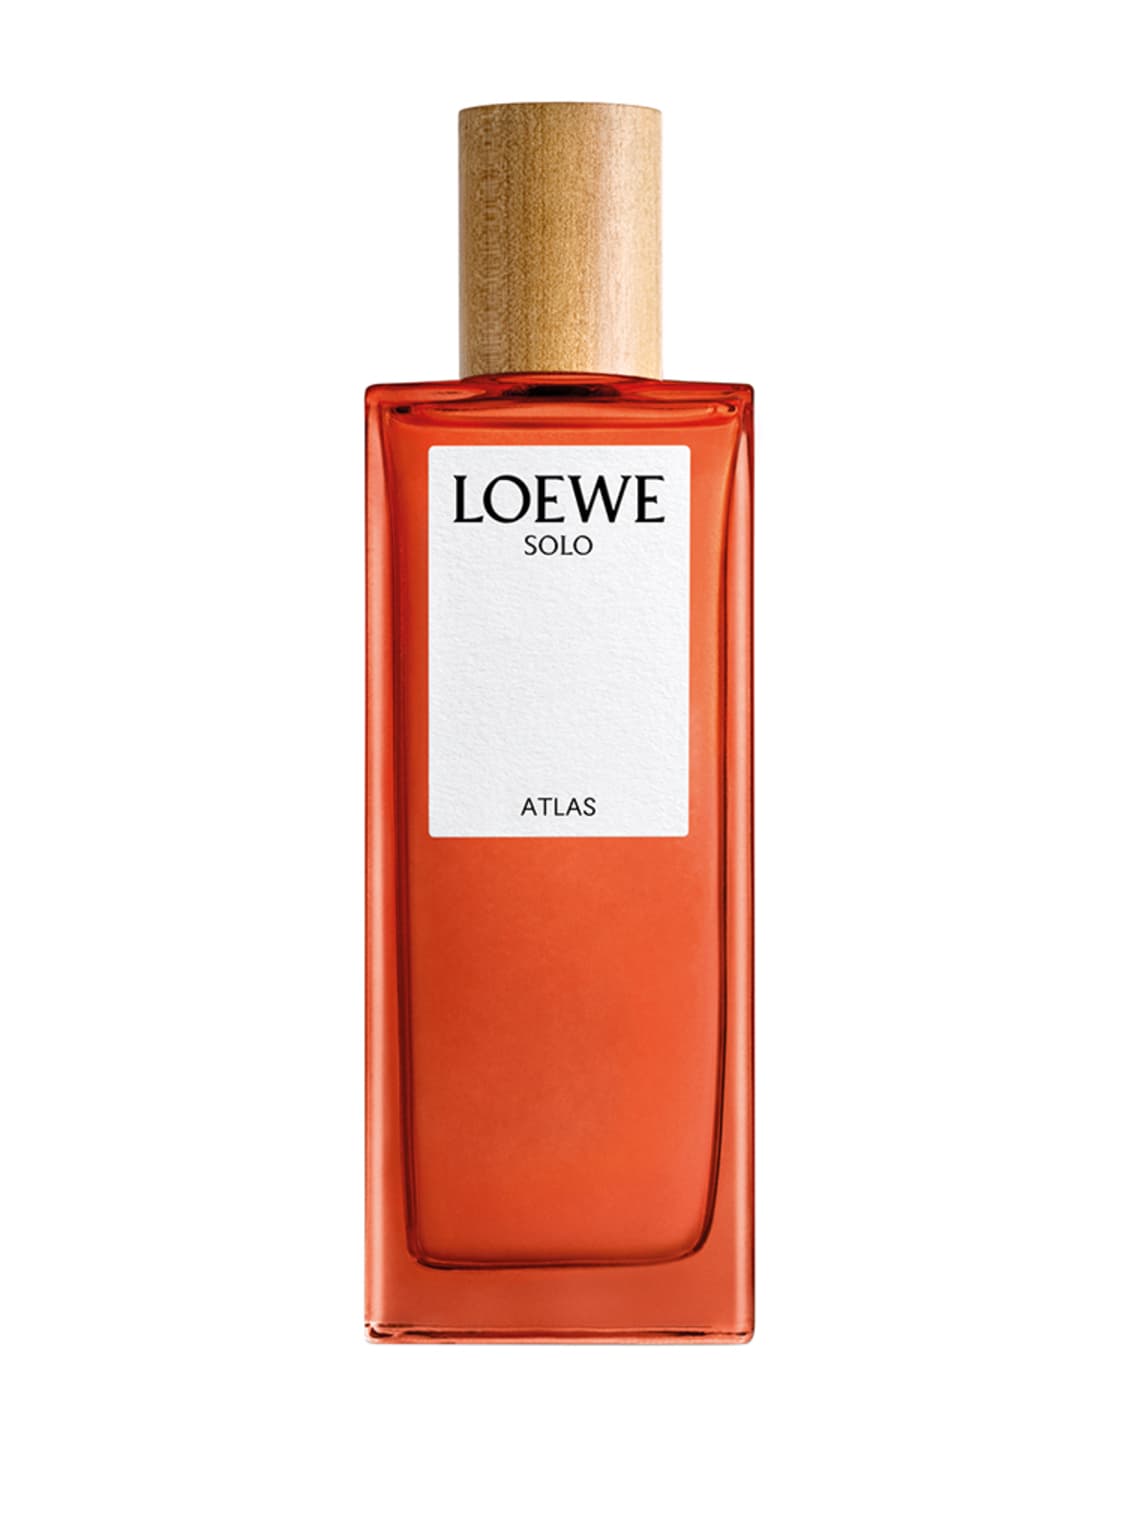 Loewe Solo Atlas Eau de Parfum 50 ml von Loewe